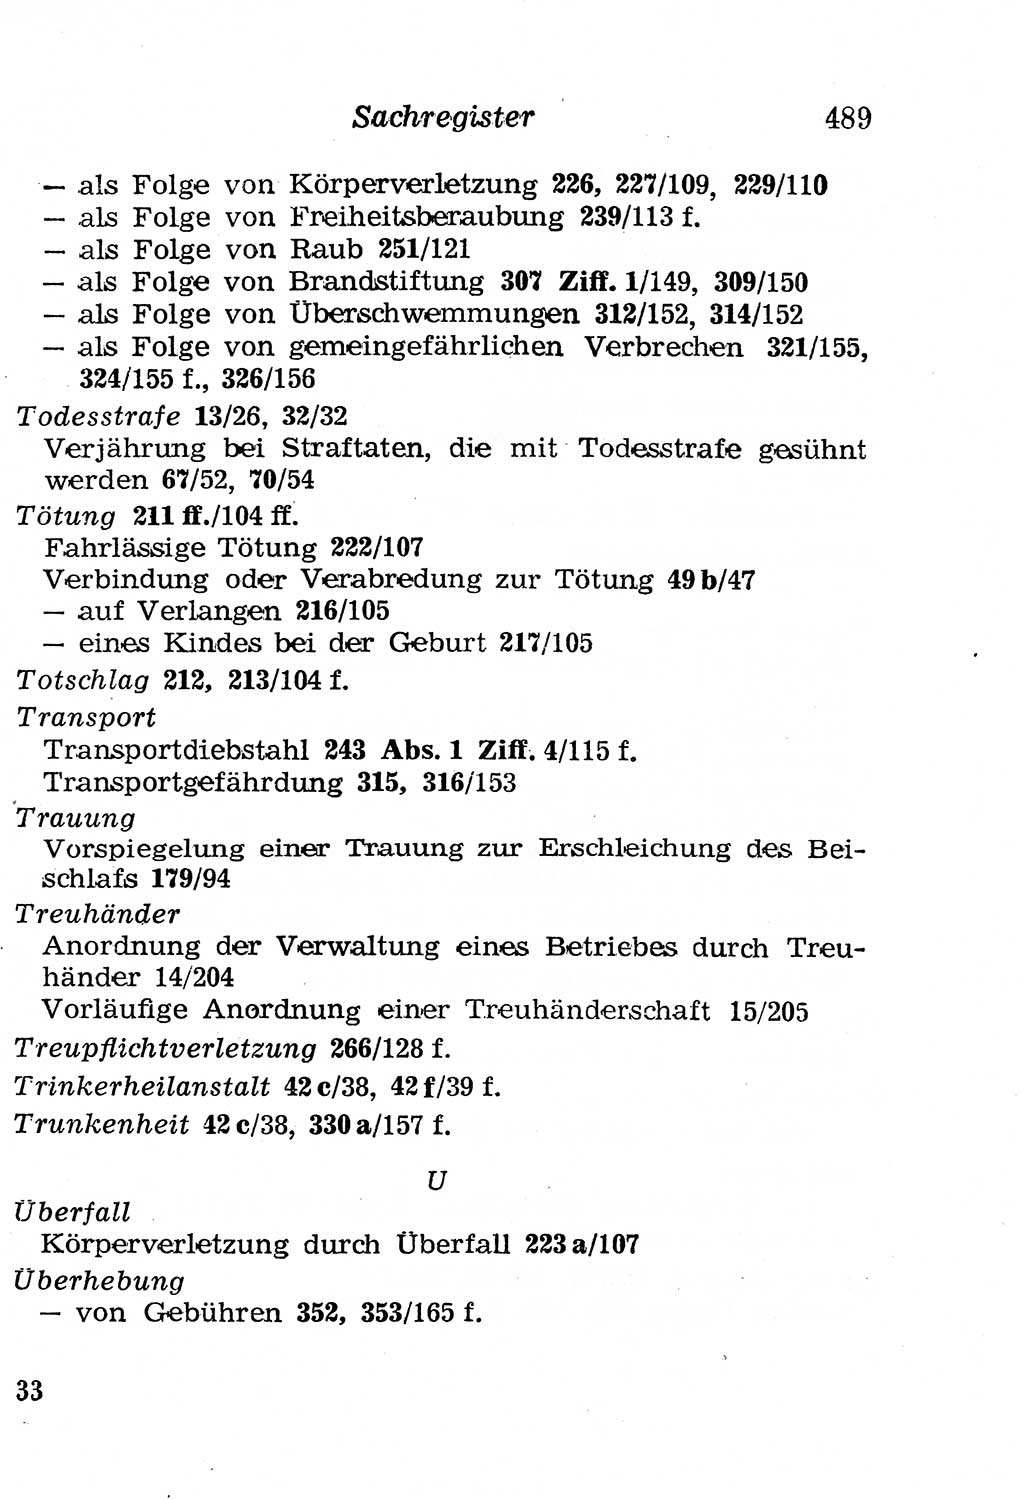 Strafgesetzbuch (StGB) und andere Strafgesetze [Deutsche Demokratische Republik (DDR)] 1958, Seite 489 (StGB Strafges. DDR 1958, S. 489)